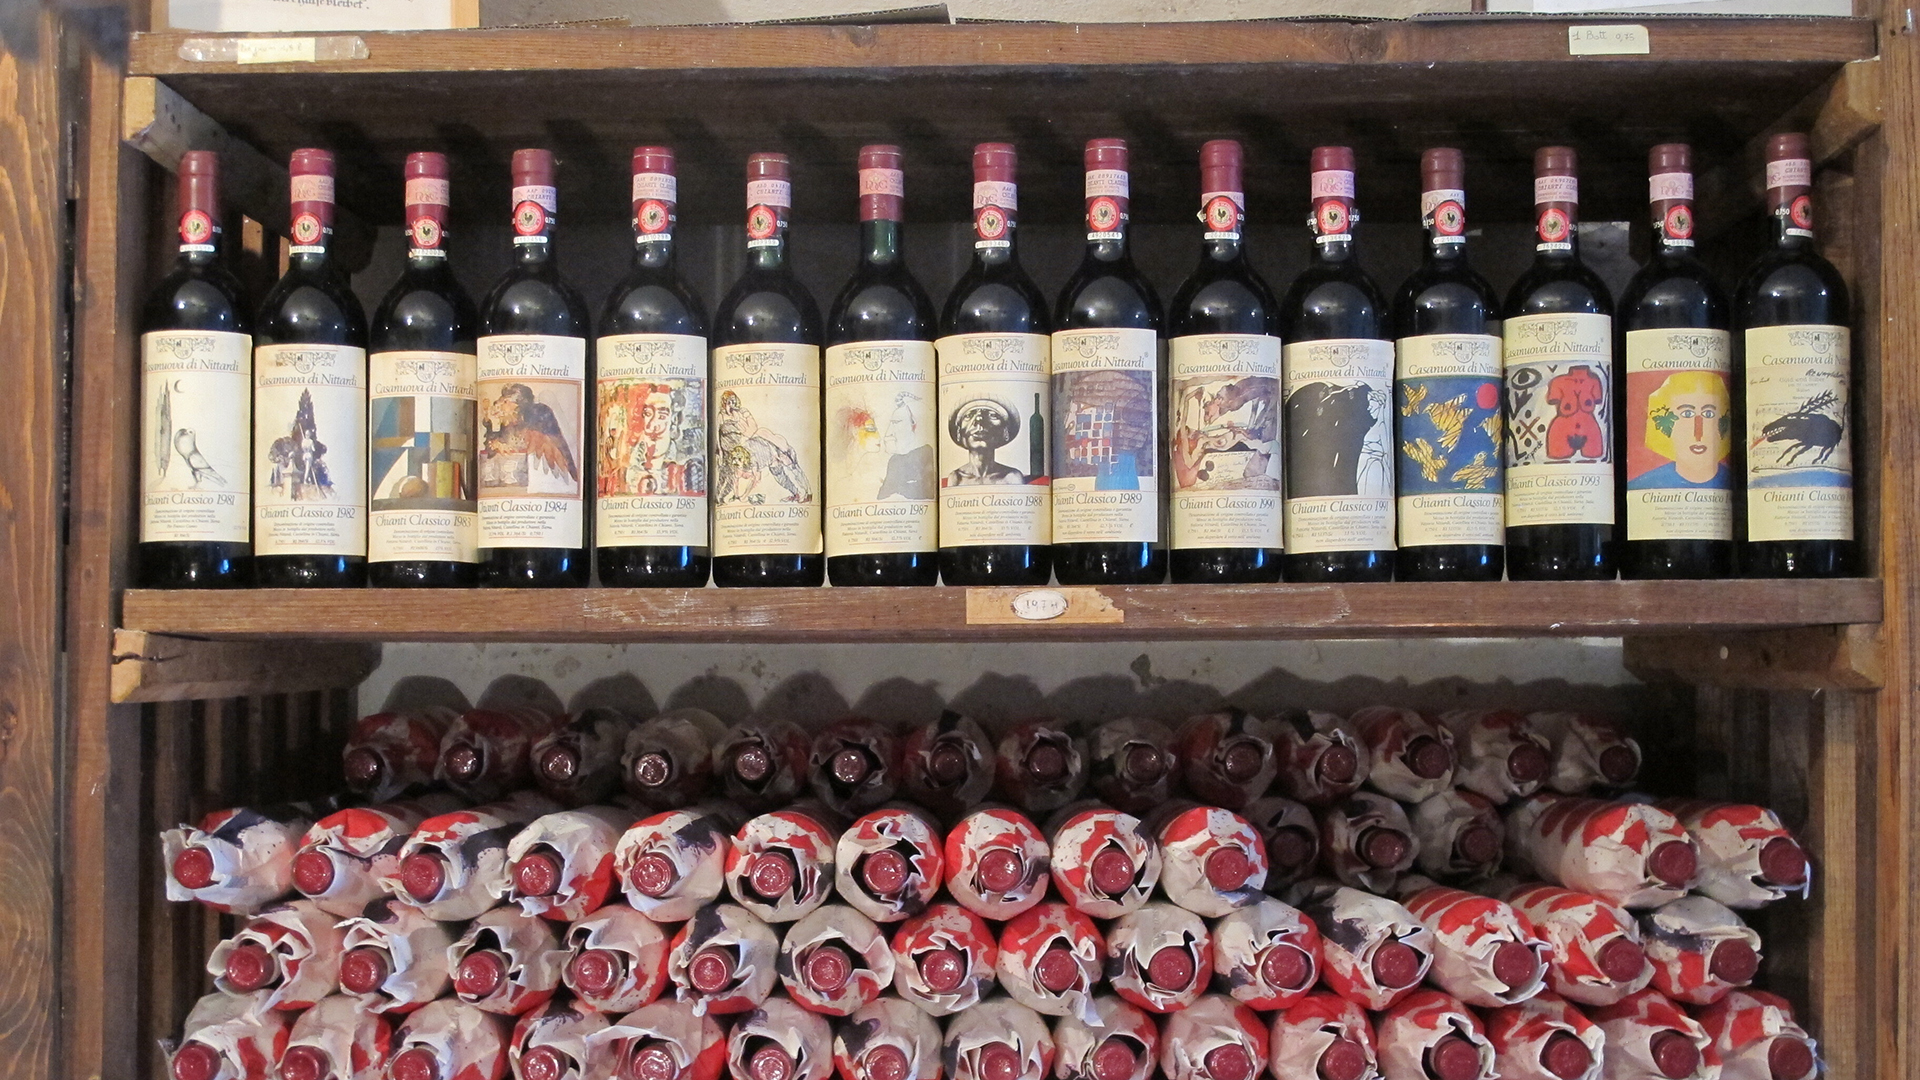 Chianti Classico Weinflaschen in einem Regal | picture alliance / dpa